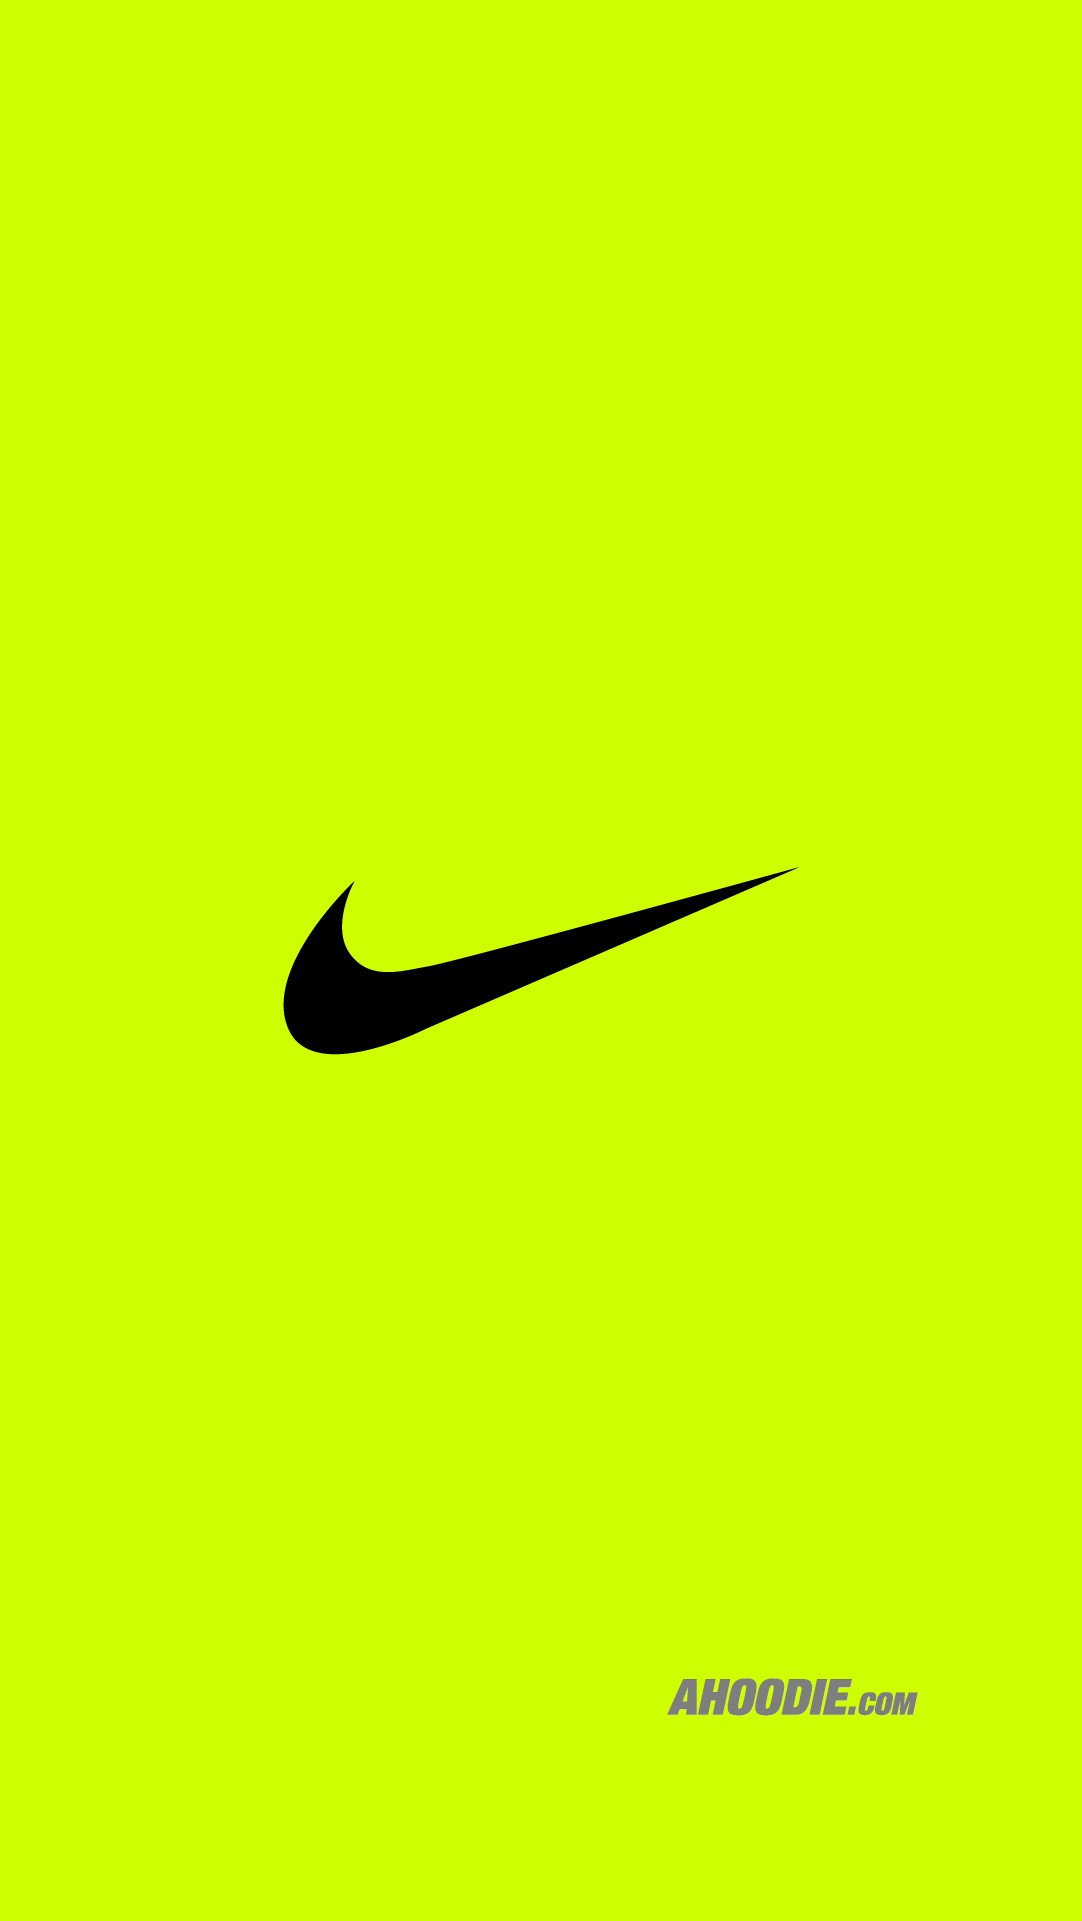 Chiếc áo hoodie Nike Swoosh với thiết kế đơn giản, màu sắc tôn lên biểu tượng Nike Swoosh là món đồ không thể thiếu trong tủ quần áo của các bạn trẻ. Hãy cùng xem hình ảnh liên quan để thấy rõ sự bền đẹp, tiện dụng và phong cách của chiếc áo này.